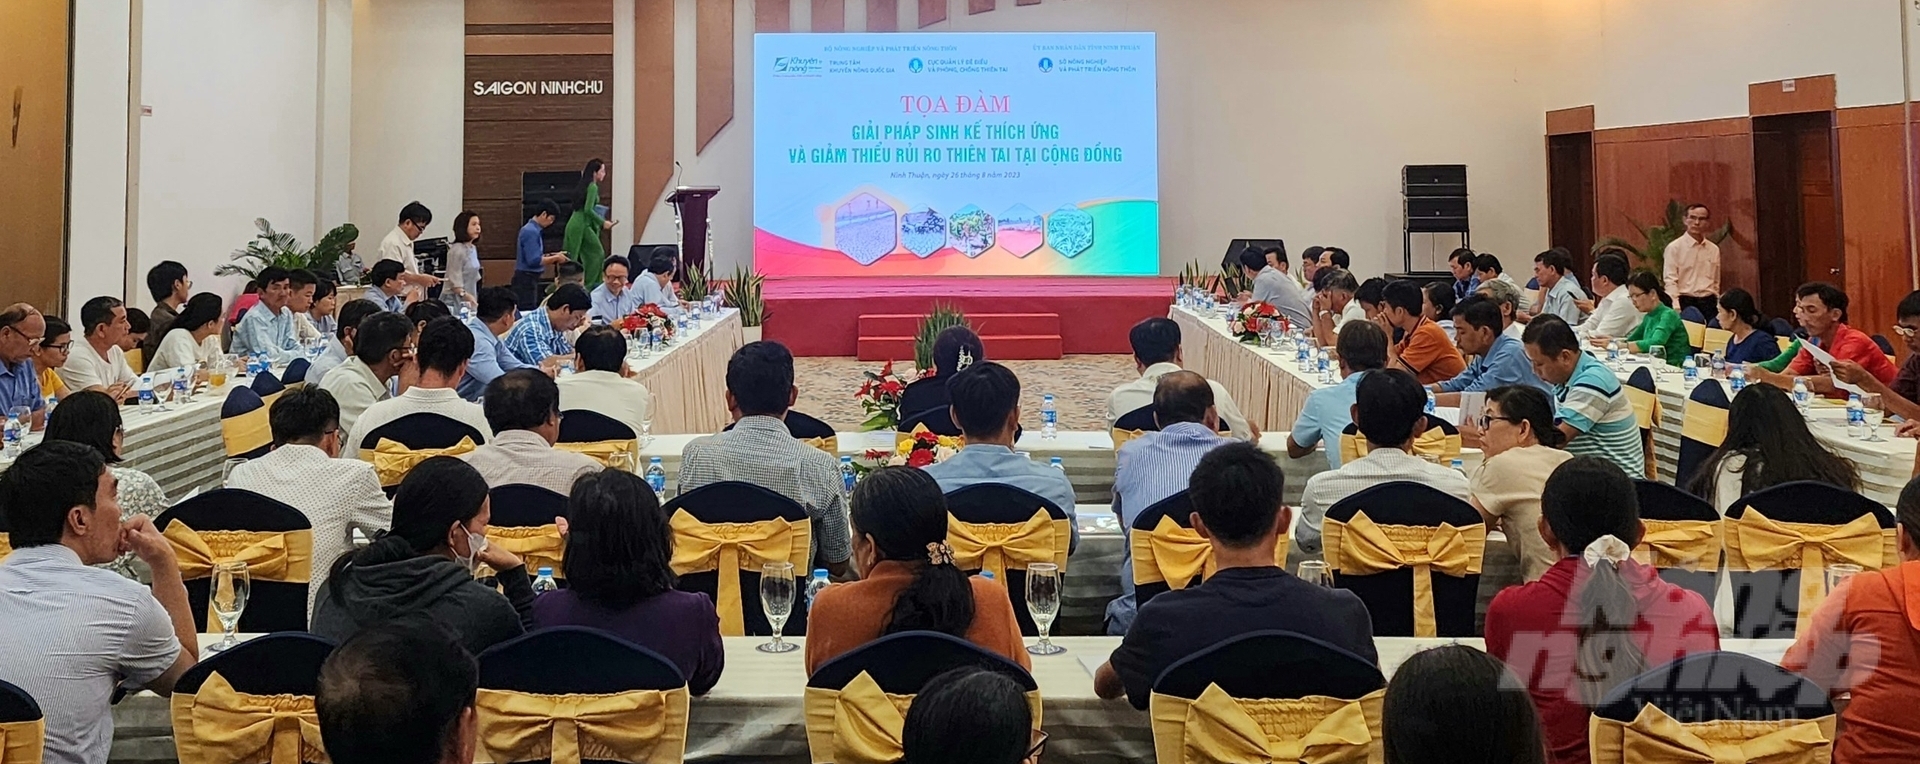 Tọa đàm 'Giải pháp sinh kế thích ứng và giảm thiểu rủi ro thiên tai tại cộng đồng' diễn ra tại Ninh Thuận. Ảnh: Phương Chi